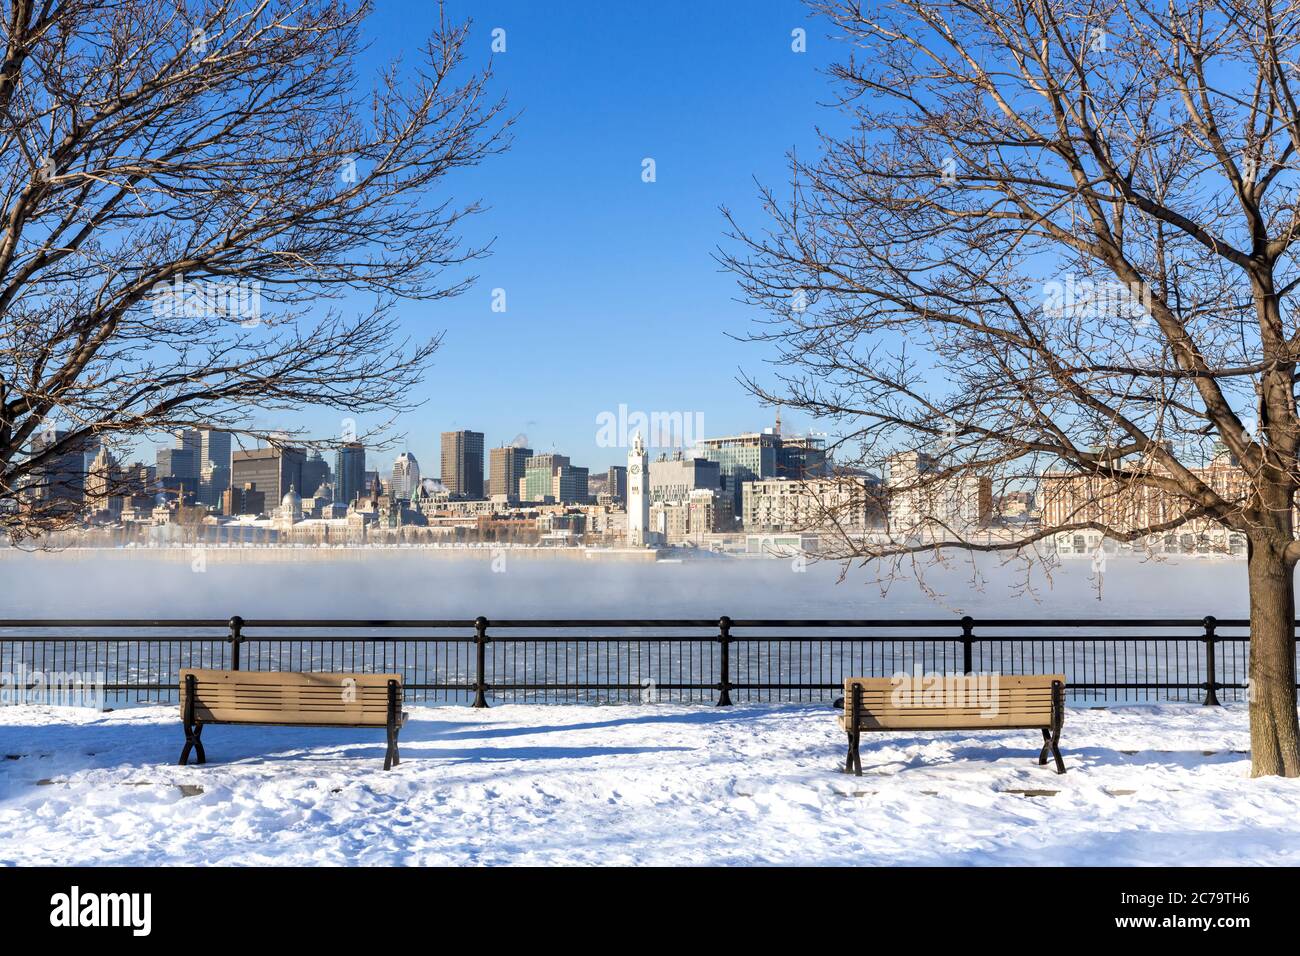 Blick über den St. Lawrence River bis ins Zentrum von Montreal. Winter mit Schnee auf dem Boden und Nebel steigt aus dem gefrorenen Wasser. Stadtbild eingerahmt Stockfoto